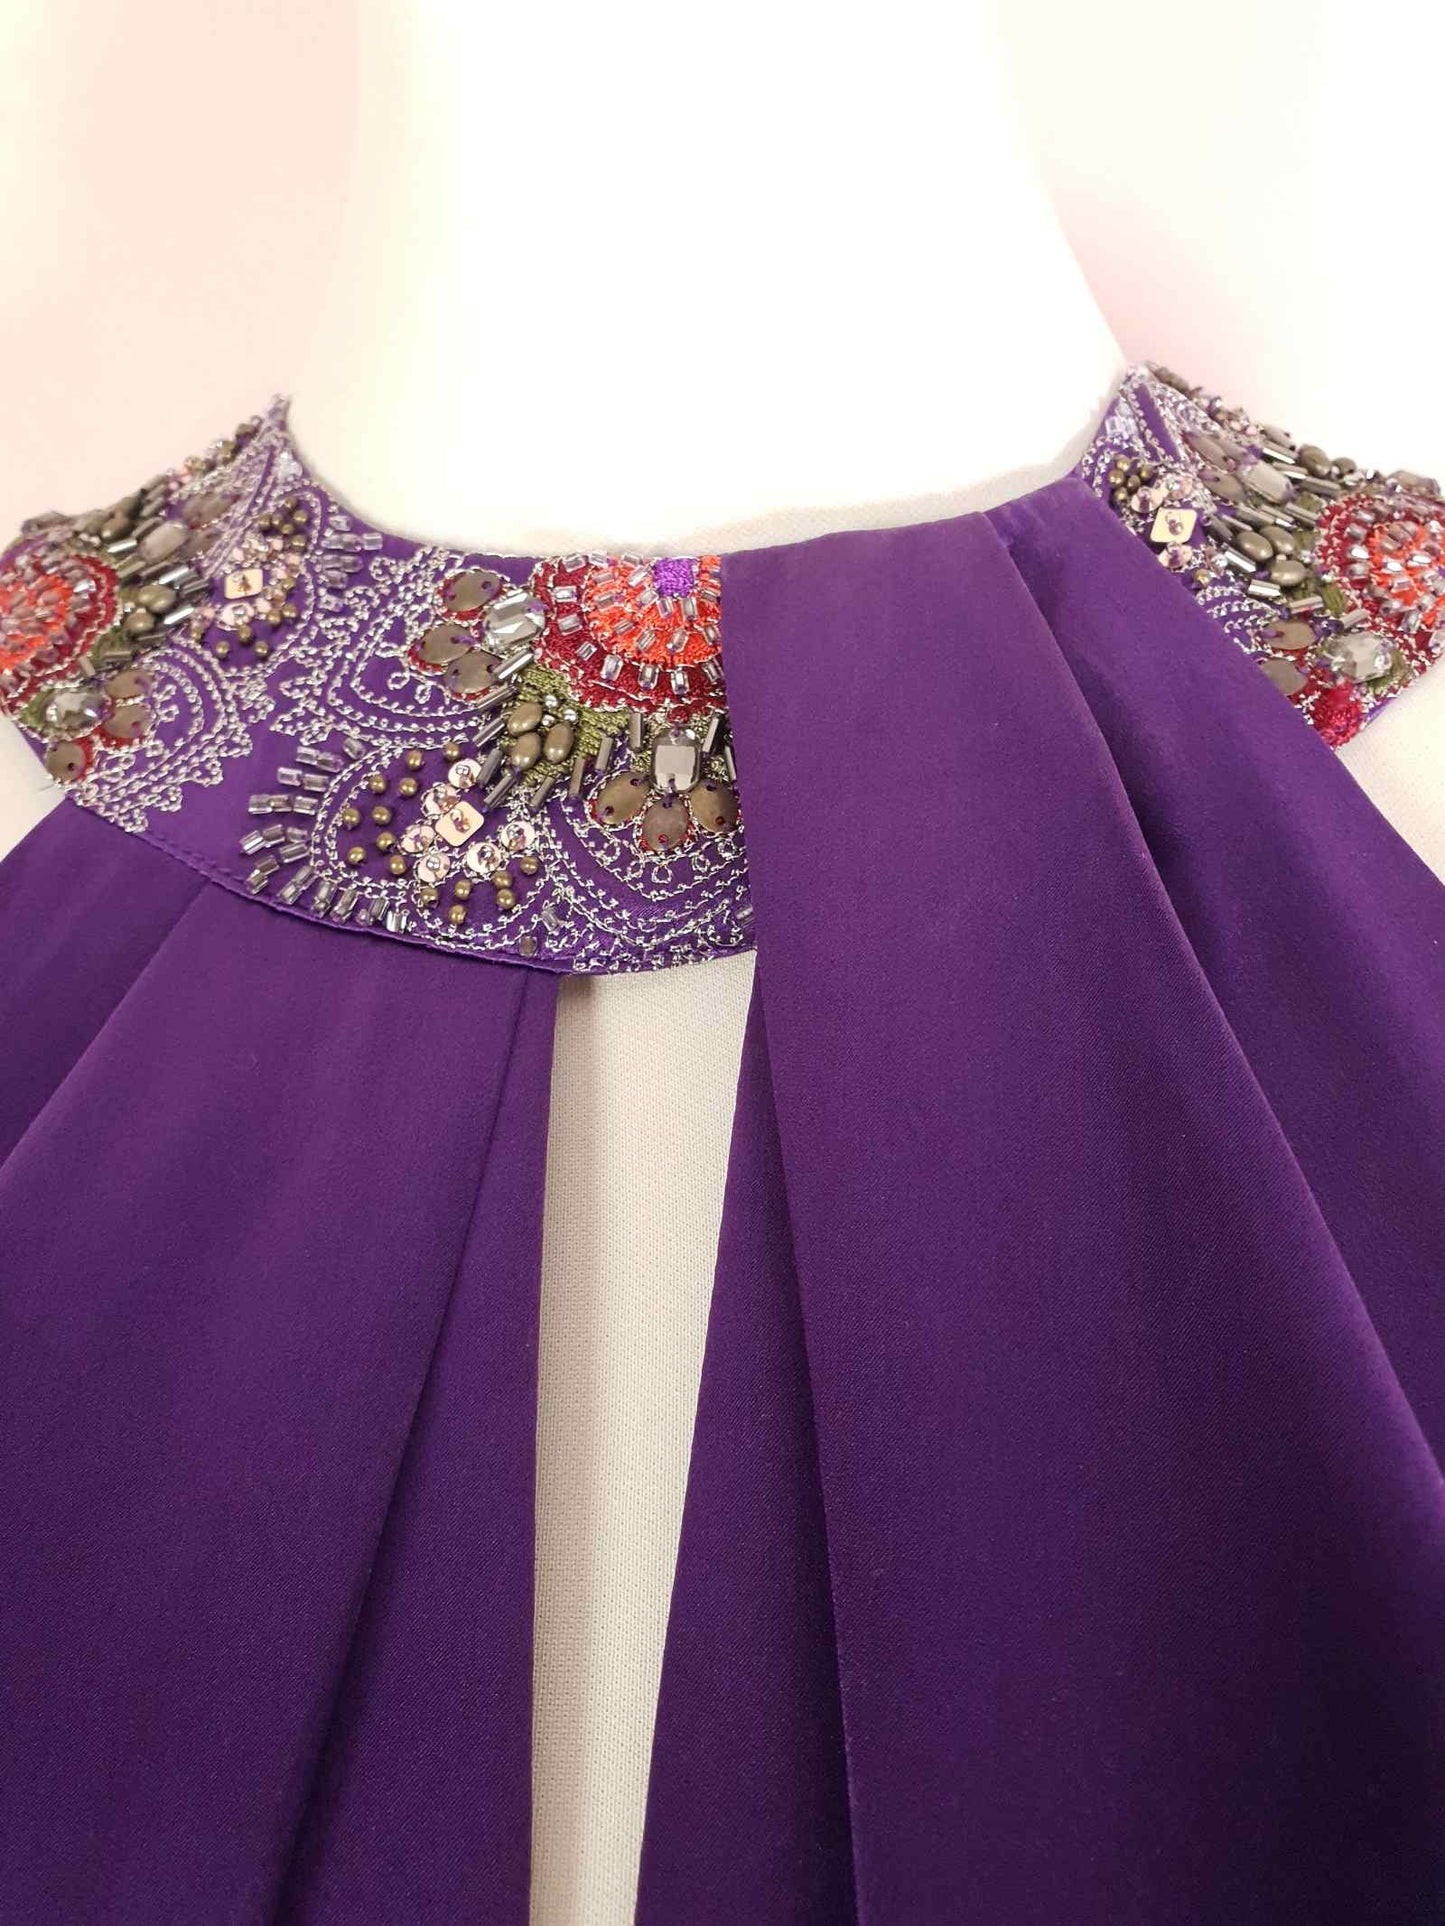 Vintage Purple Silk Halter Dress Size 10 Midi Embroidered Beaded